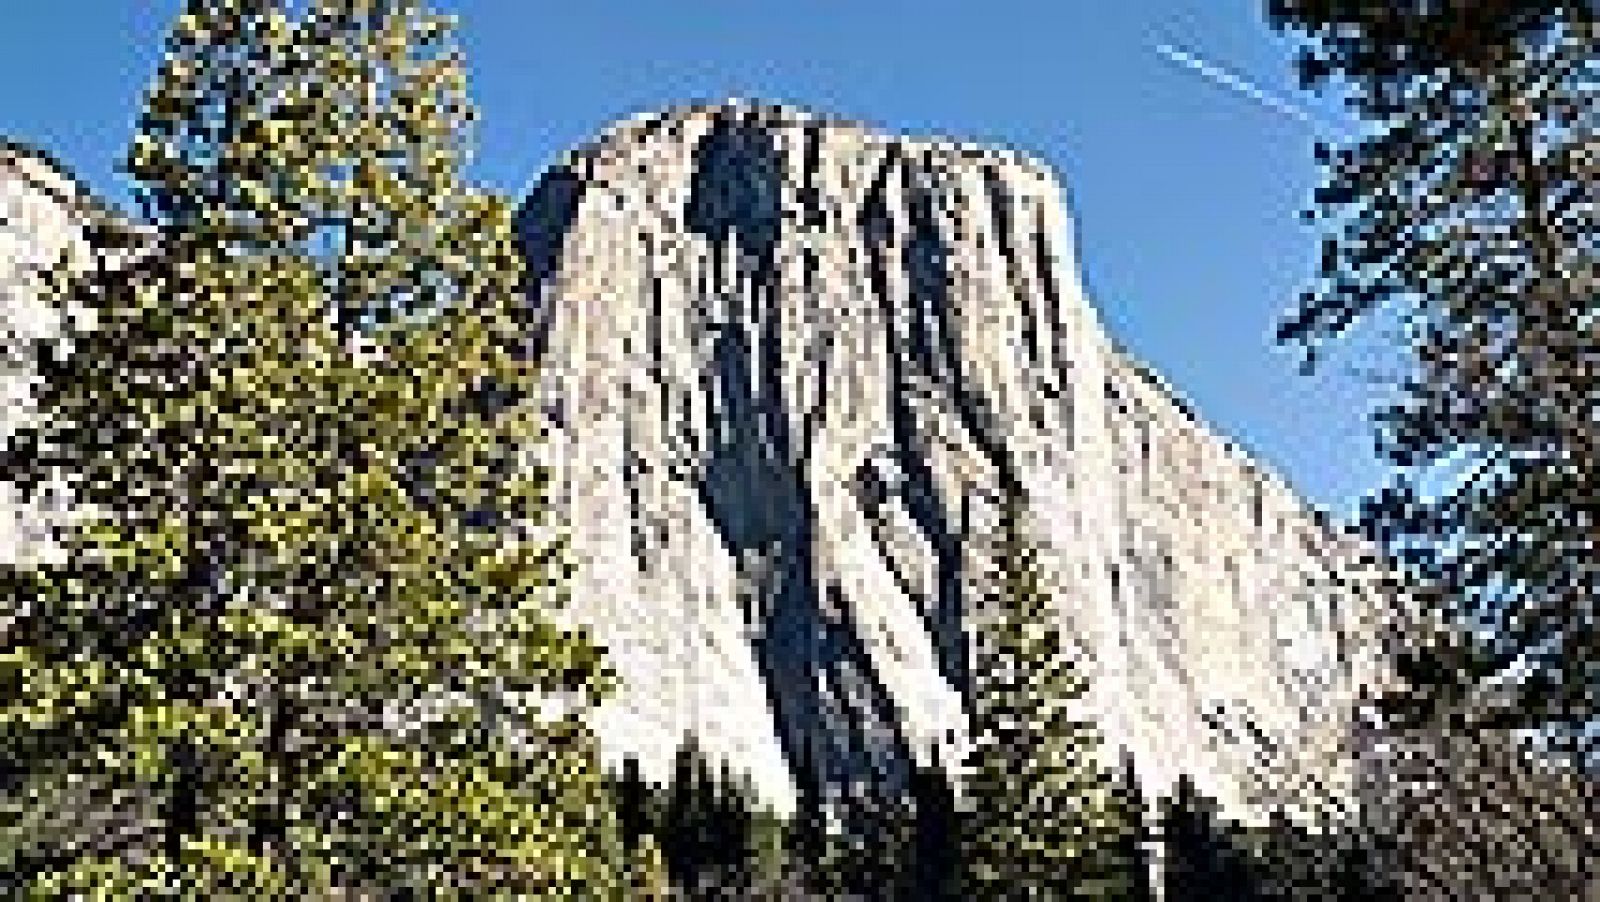 Los estadounidenses Tommy Caldwell y Kevin Jorgeson se convirtieron este miércoles en los primeros en escalar en una sola expedición de diecinueve días la montaña de granito "El Capitán" del Valle de Yosemite (California).